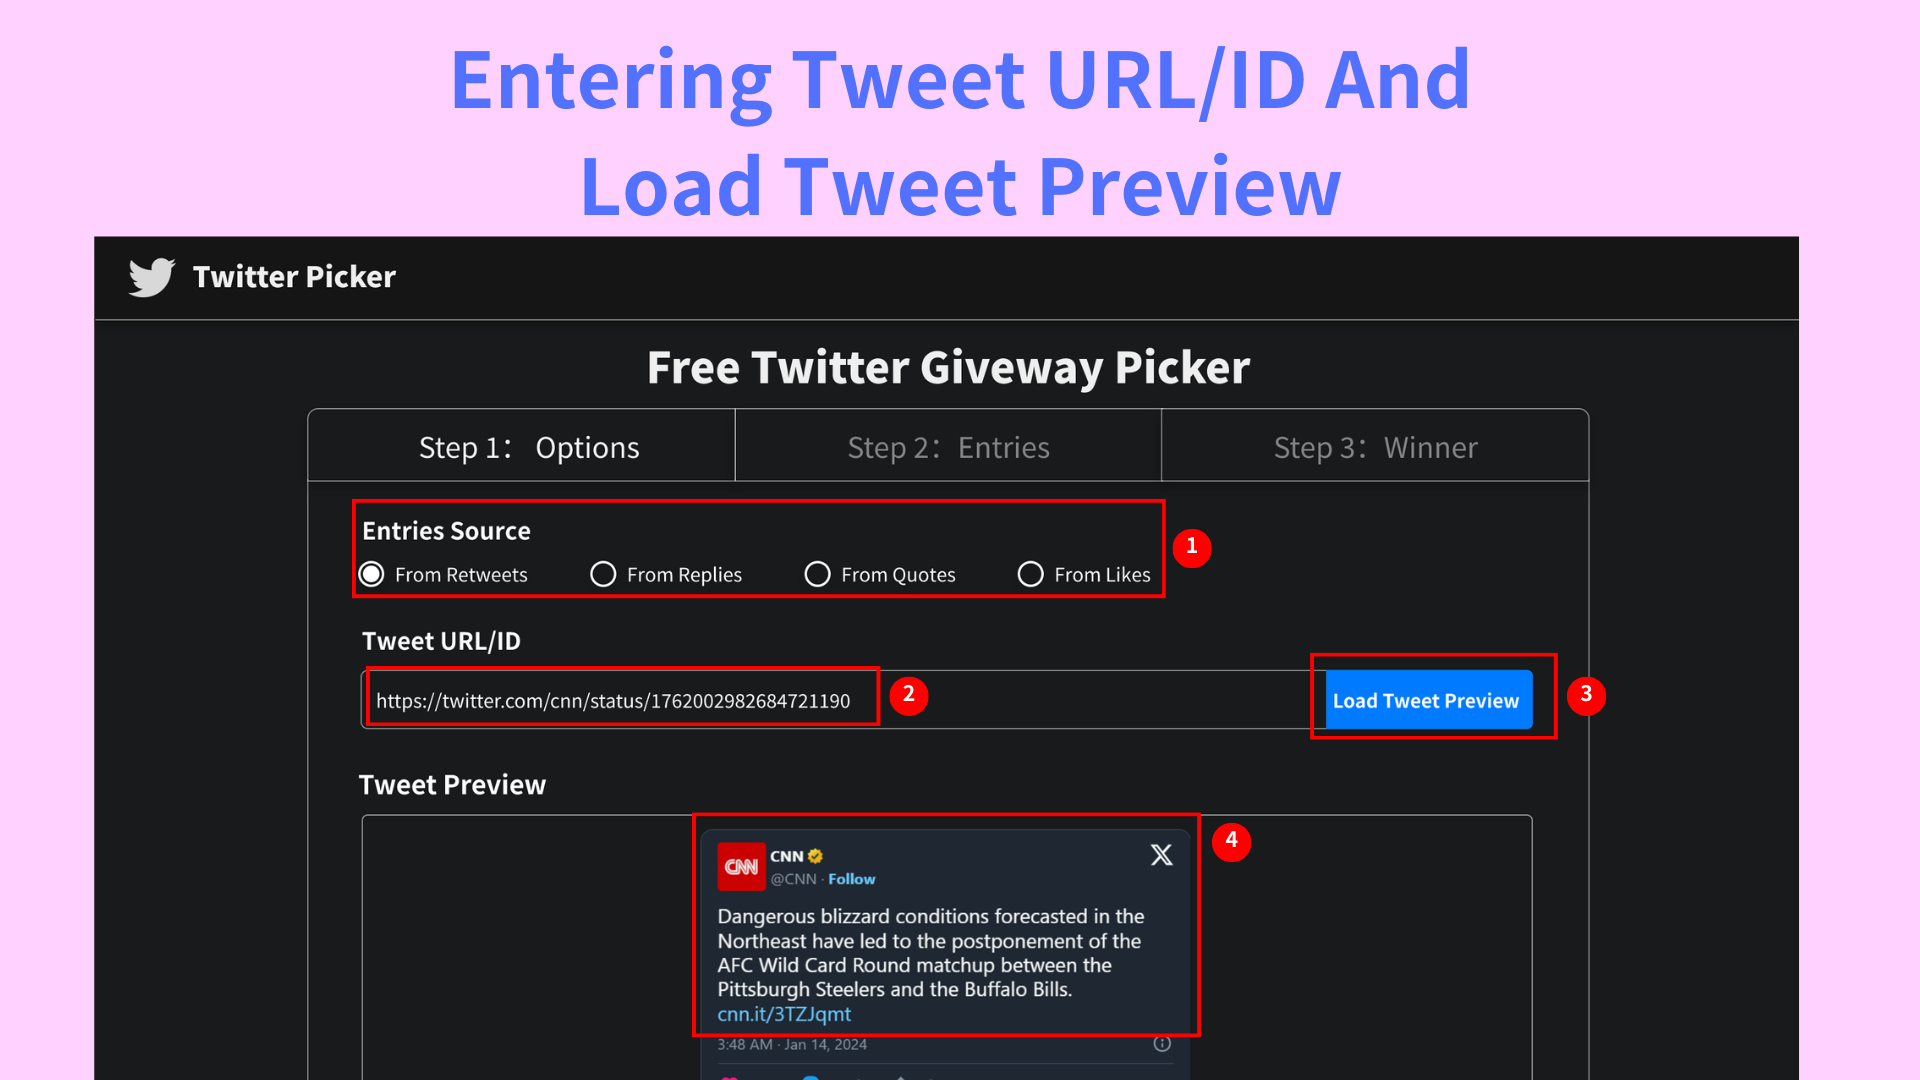 Step 2: Entering Tweet URL/ID And Load Tweet Preview